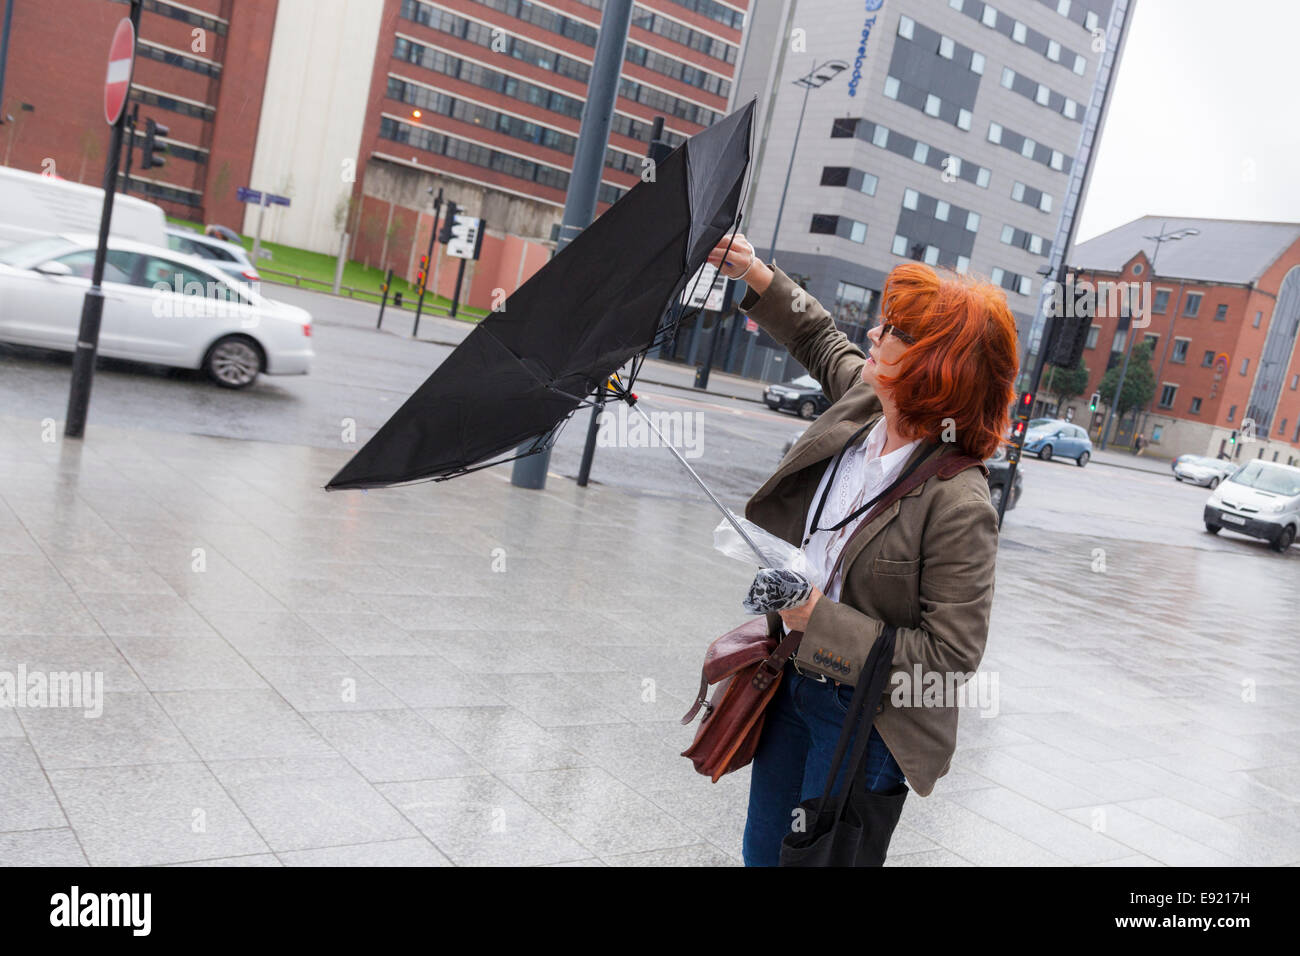 Parapluie, jour de grand vent. Personne avec un brolly inside out soufflé par le vent, Liverpool, Angleterre, Royaume-Uni Banque D'Images